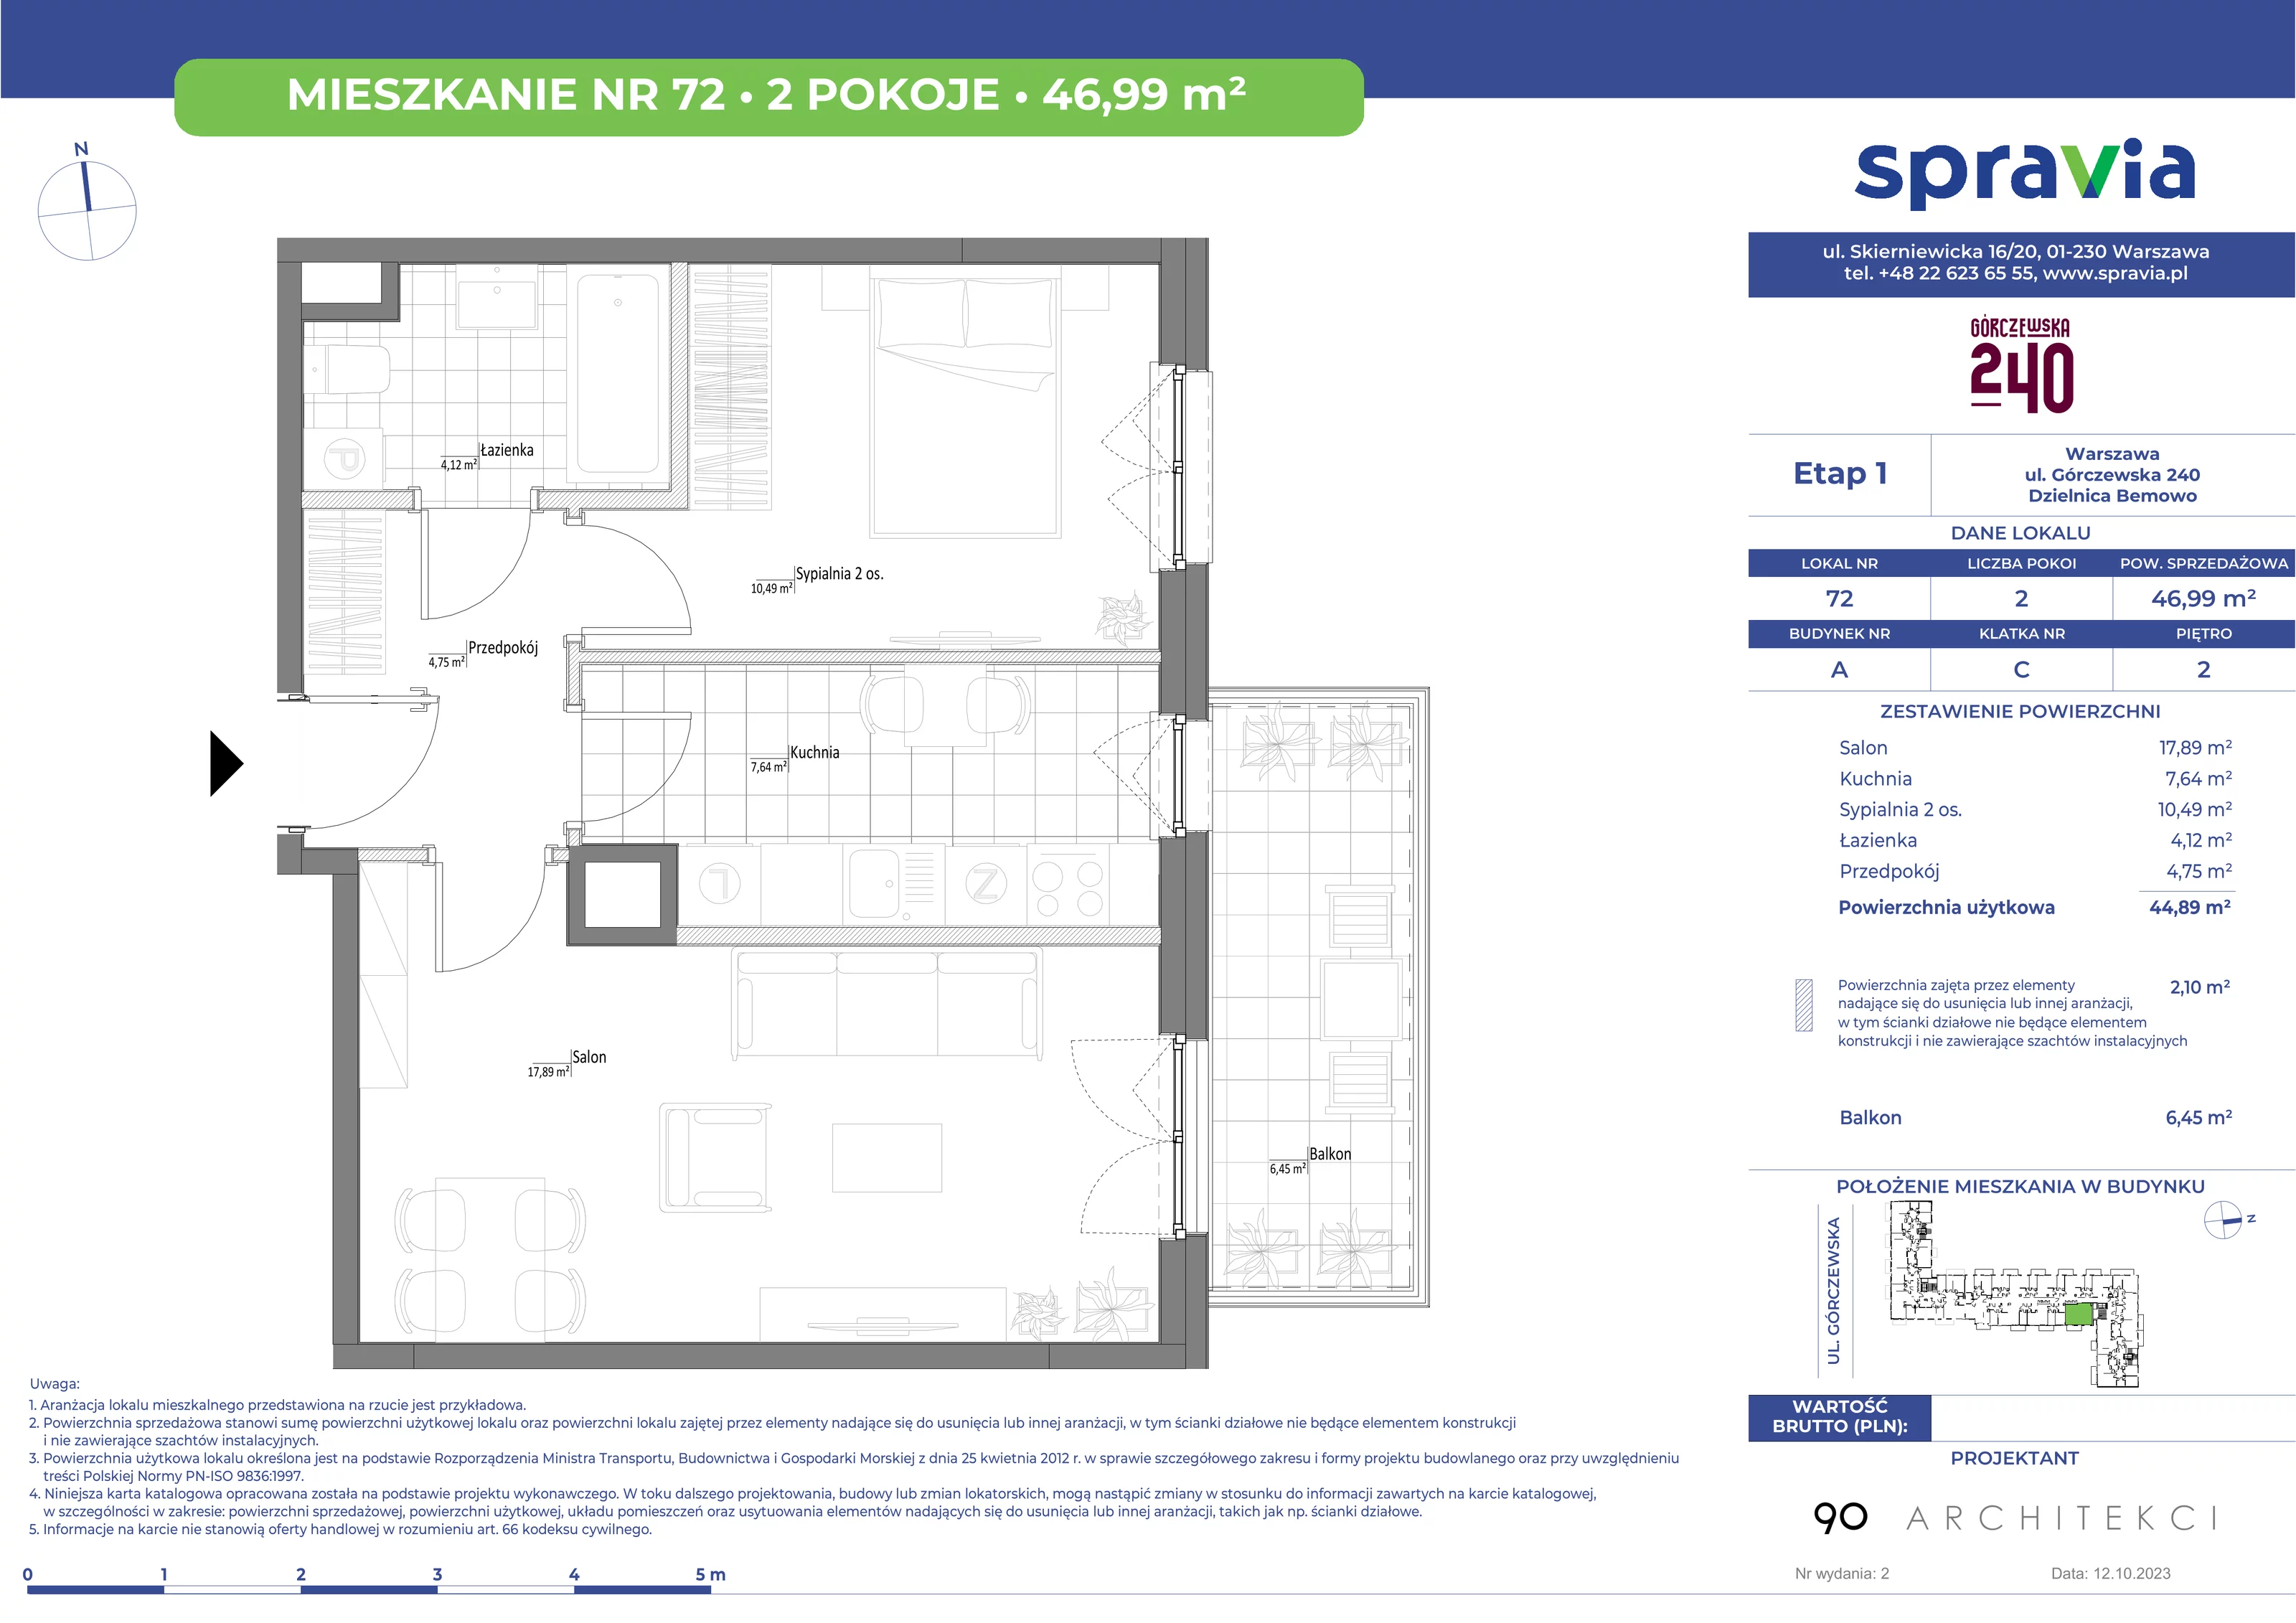 Mieszkanie 46,99 m², piętro 2, oferta nr 72, Górczewska 240, Warszawa, Bemowo, Górce, ul. Górczewska 240